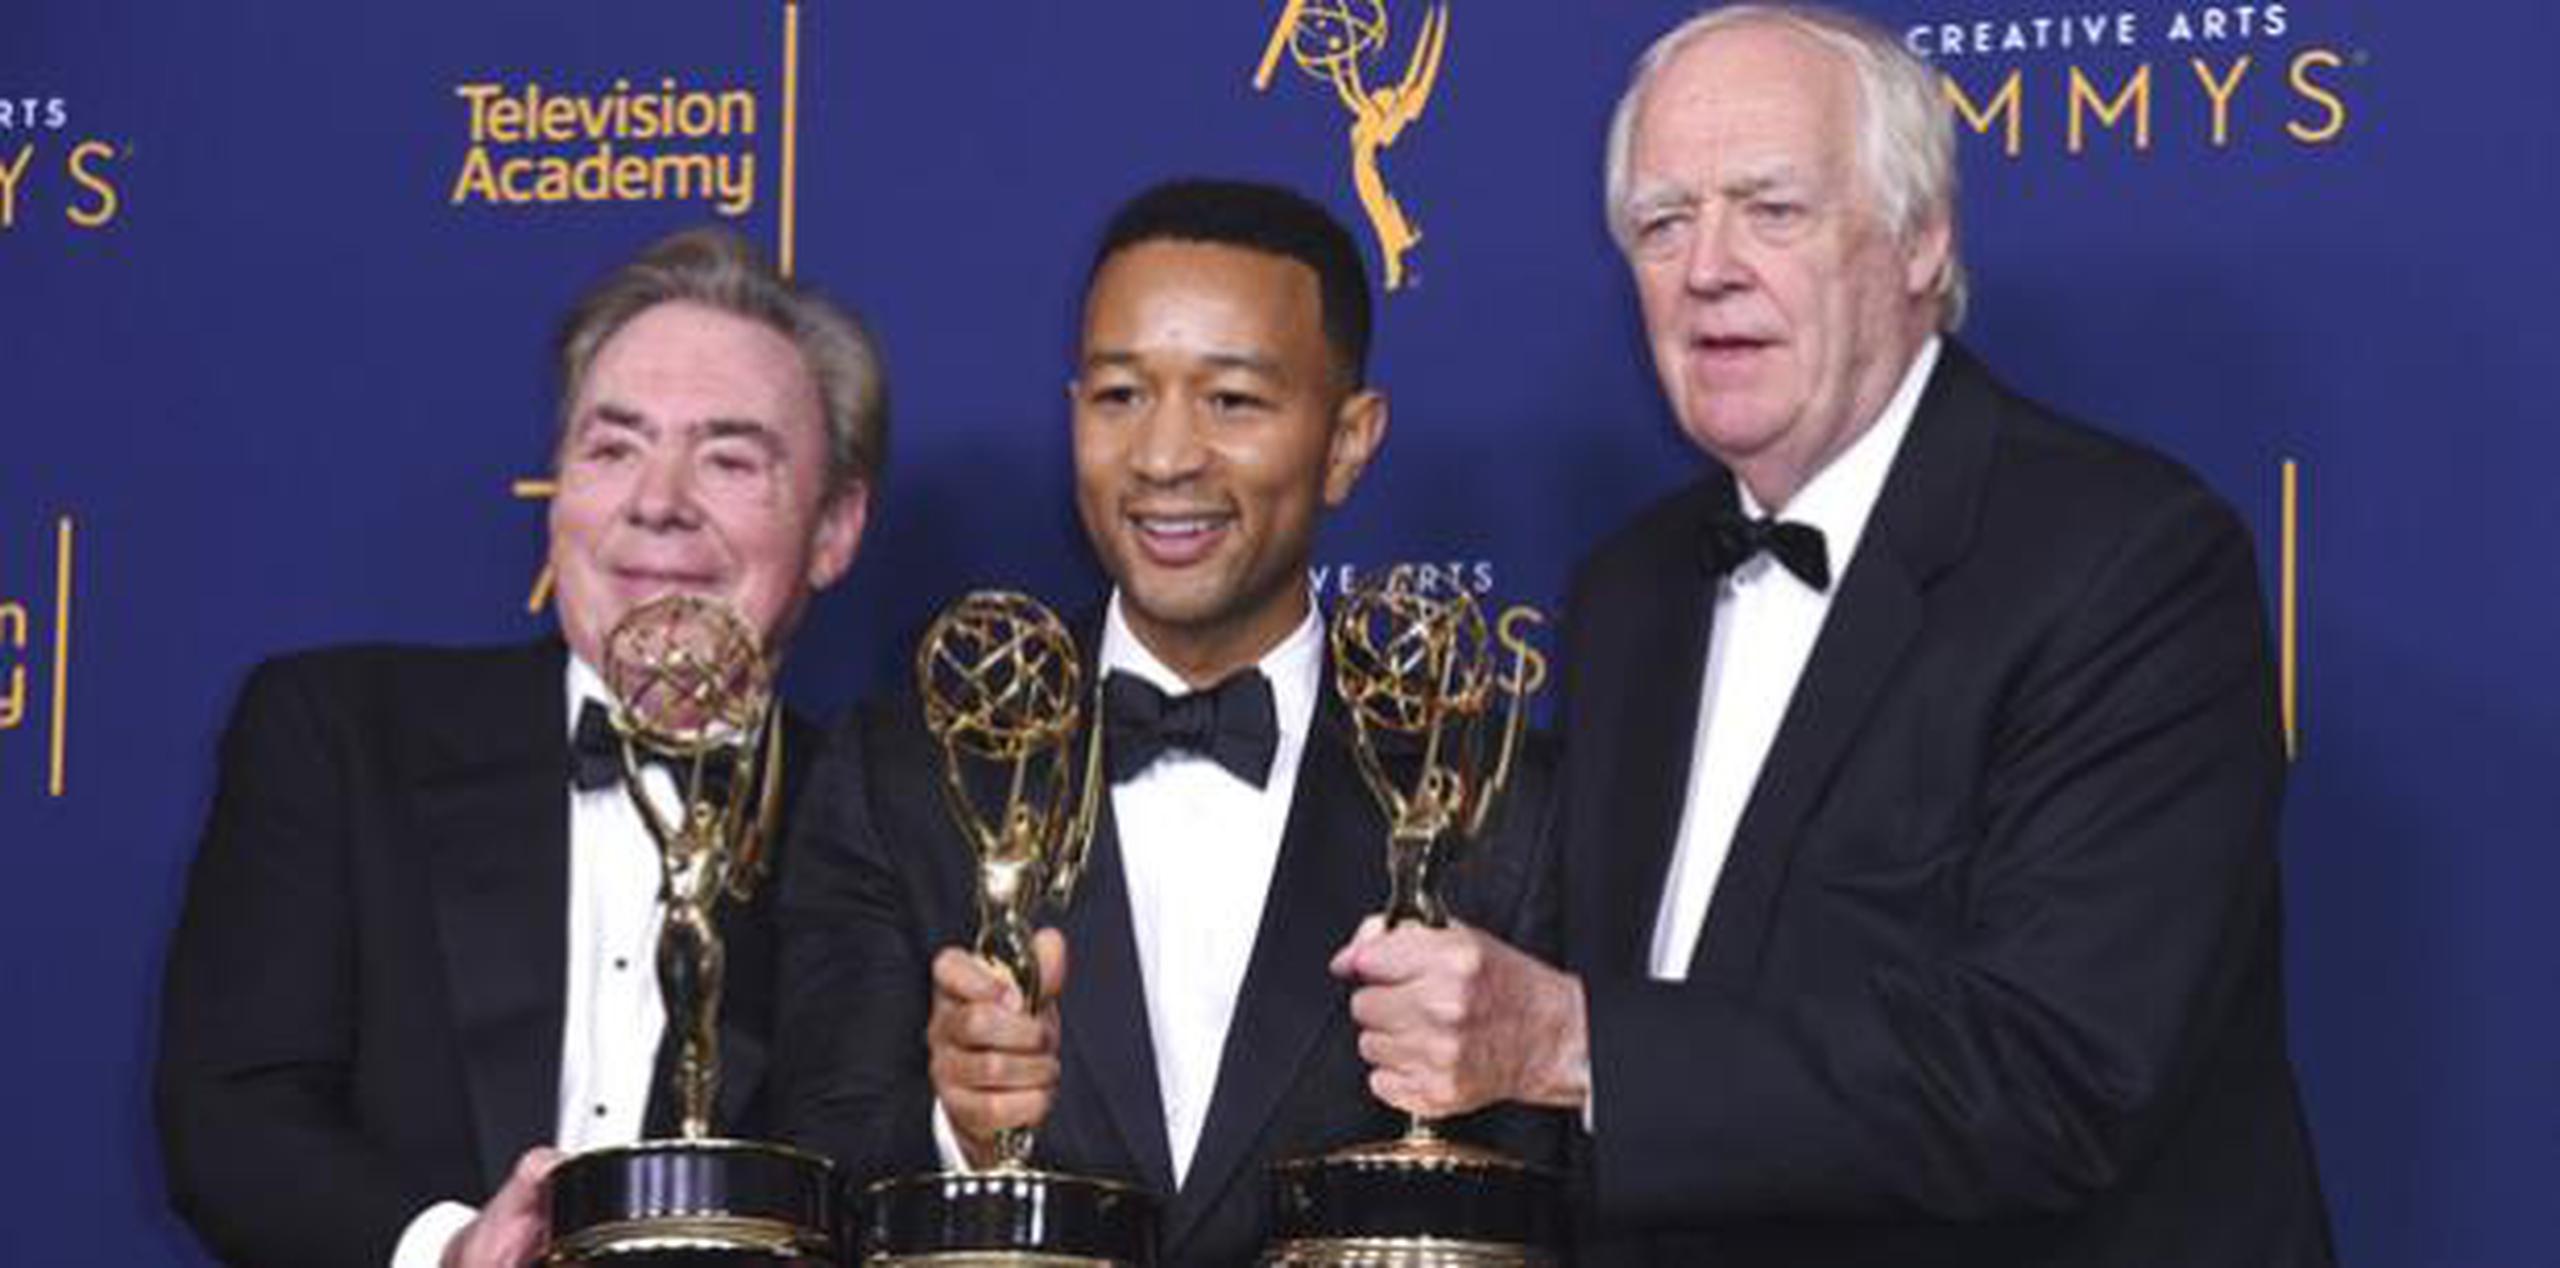 Son ellos los ganadores 13, 14 y 15 que históricamente obtienen premios Emmy, Grammy, Oscar y Tony. En el caso de Legend, se convirtió así en el primer actor negro en lograr un EGOT. (AP)